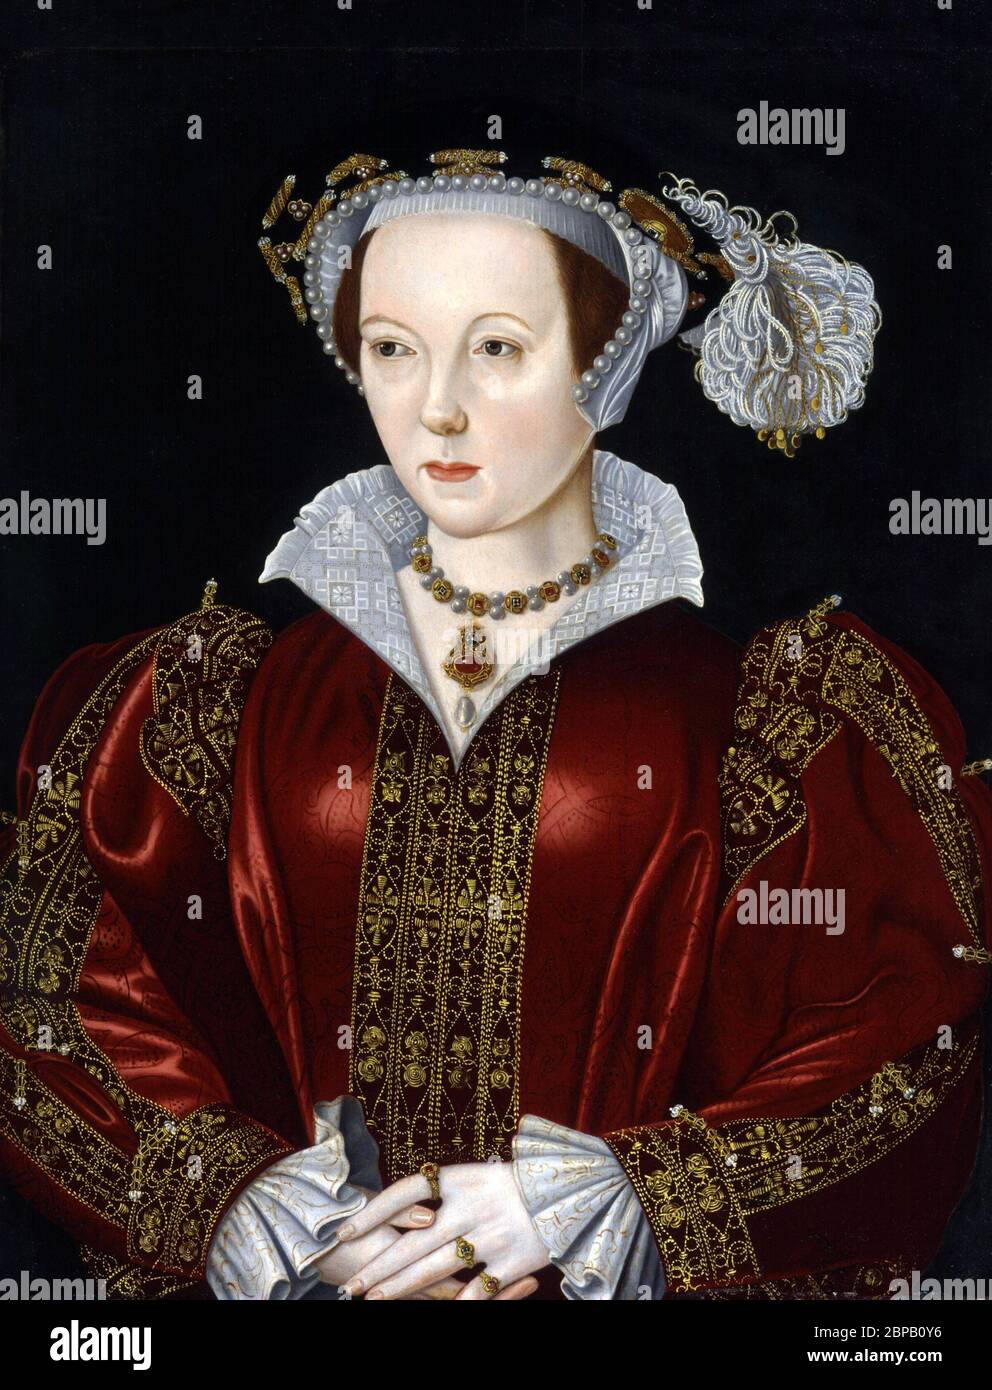 Katherine Parr. Retrato de la sexta esposa del rey Enrique VIII de Inglaterra, Catherine Parr (1512-1548) por artista desconocido, óleo sobre panel, finales del siglo 16 Foto de stock